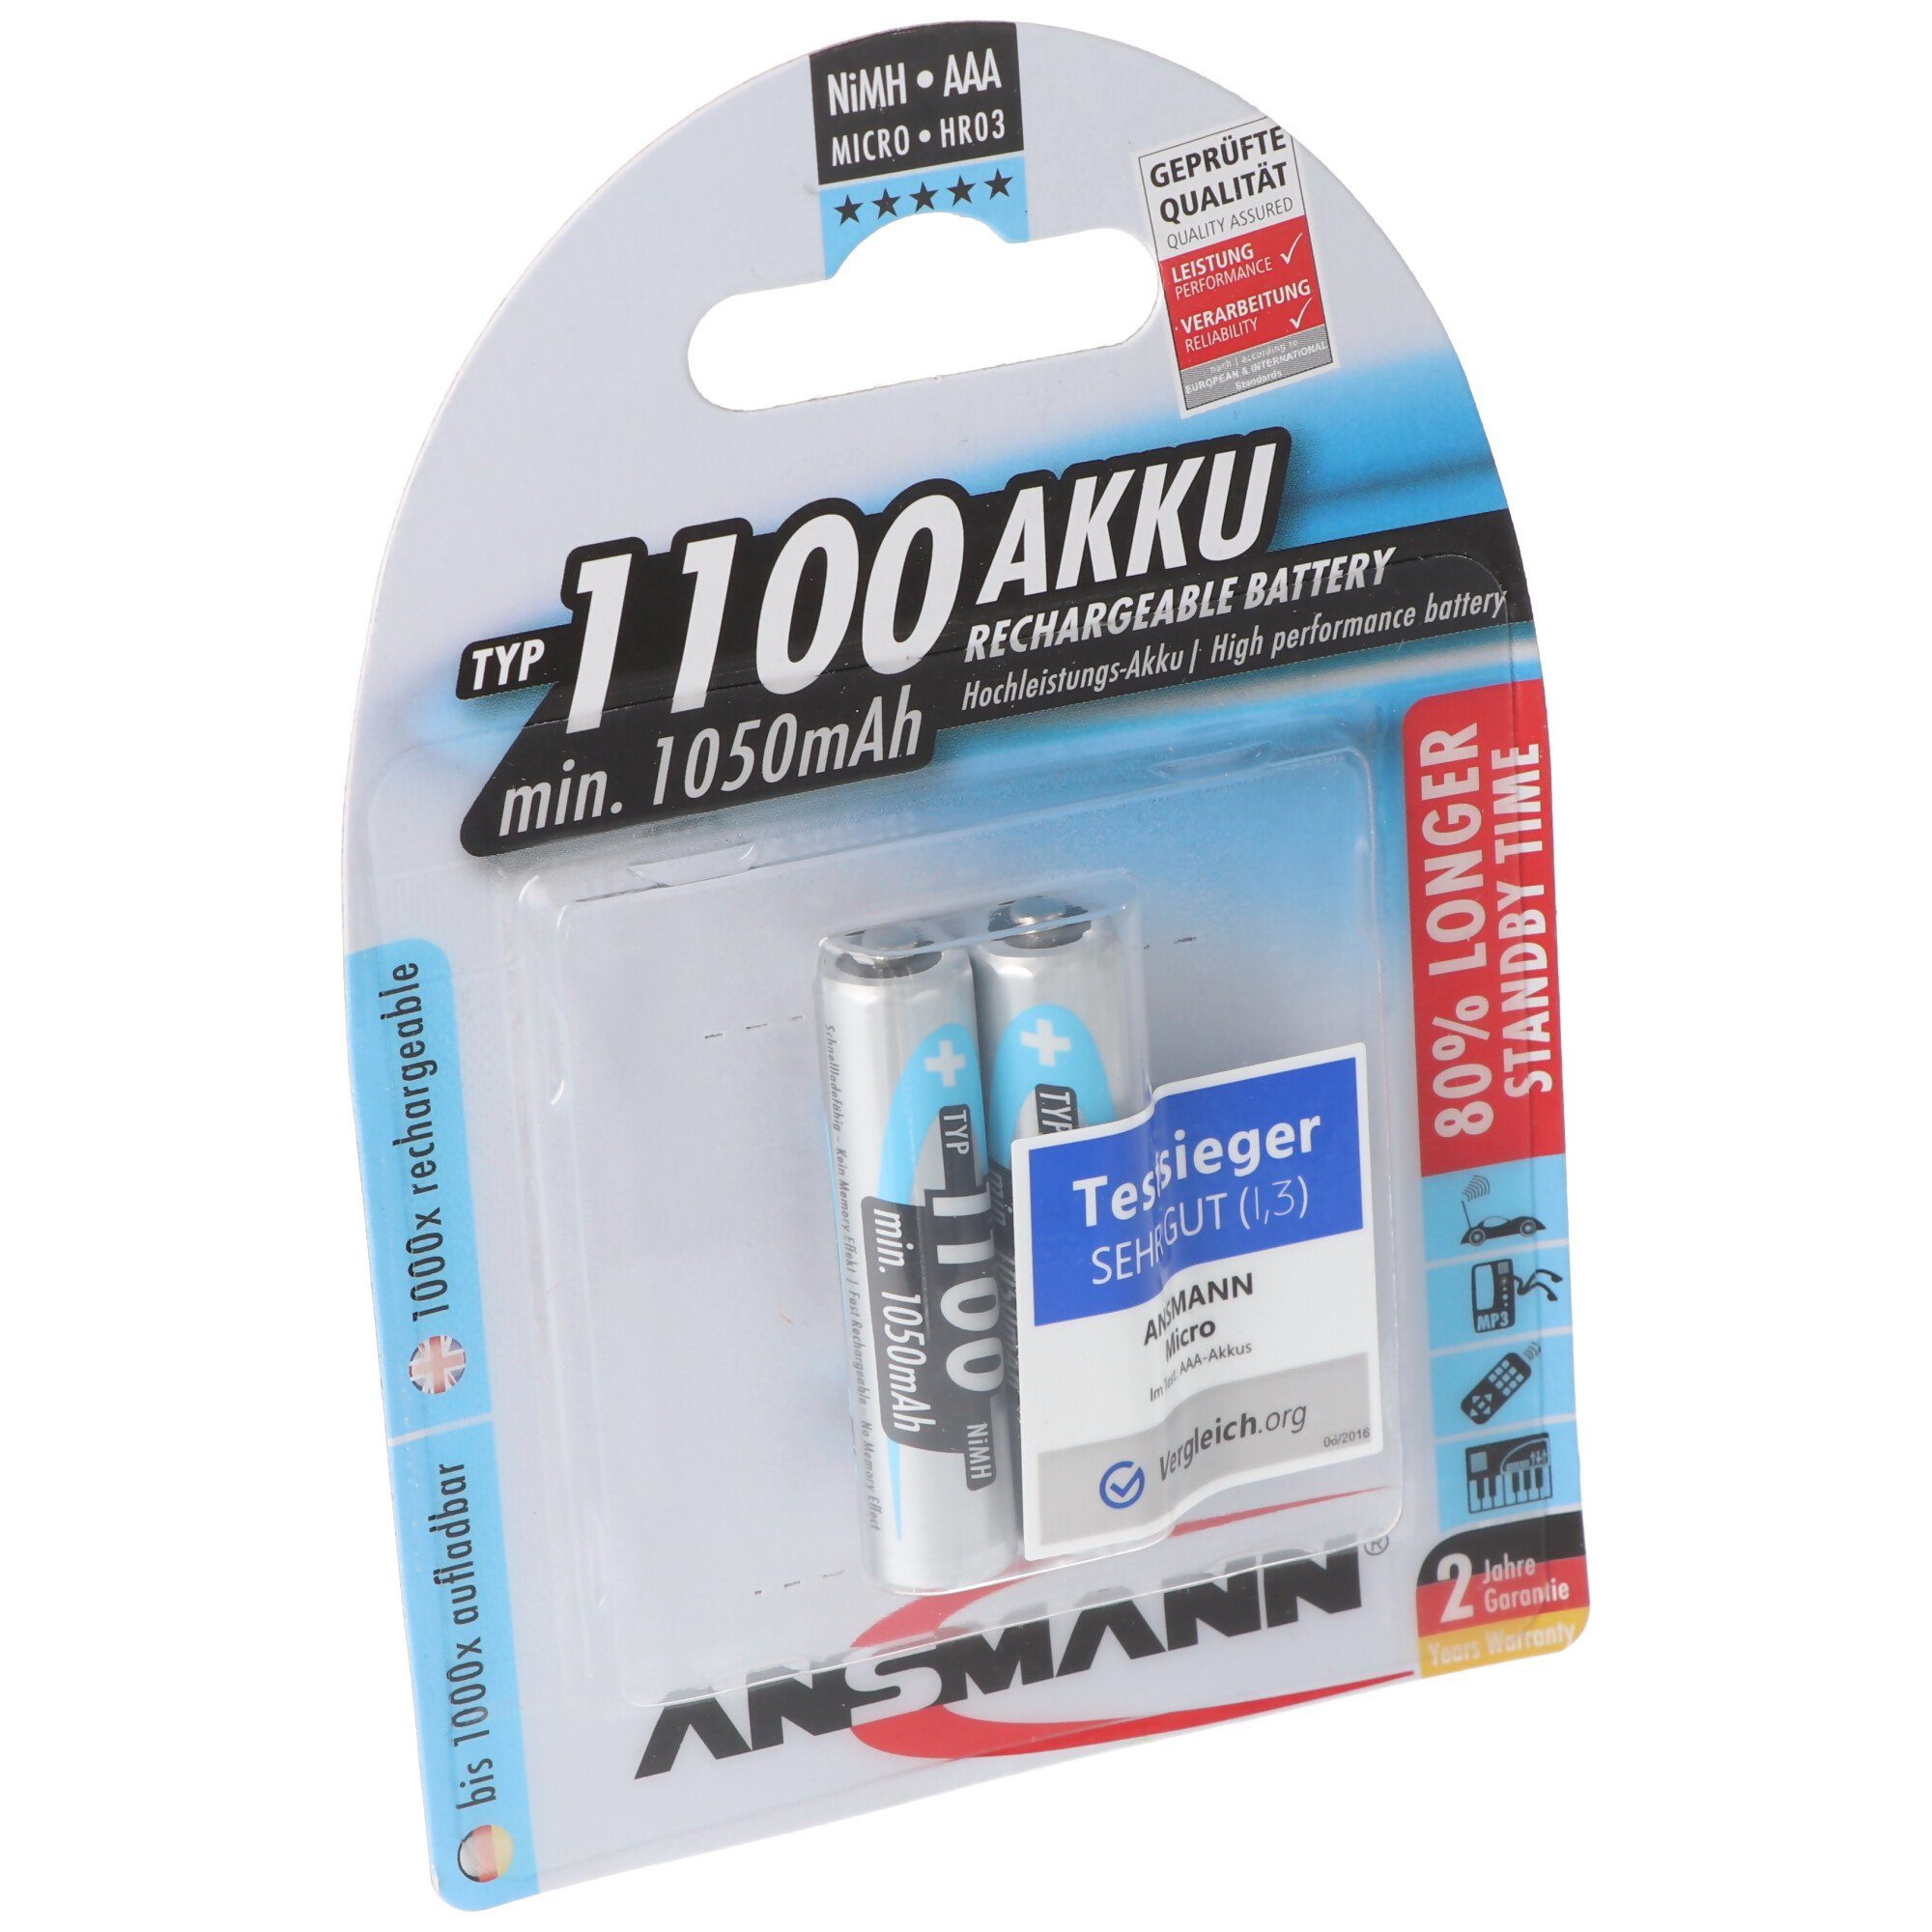 ANSMANN® Ansmann NiMH-Akku Typ 1100 Micro 1050mAh 2er Blister Akku 1050 mAh (1,2 V)